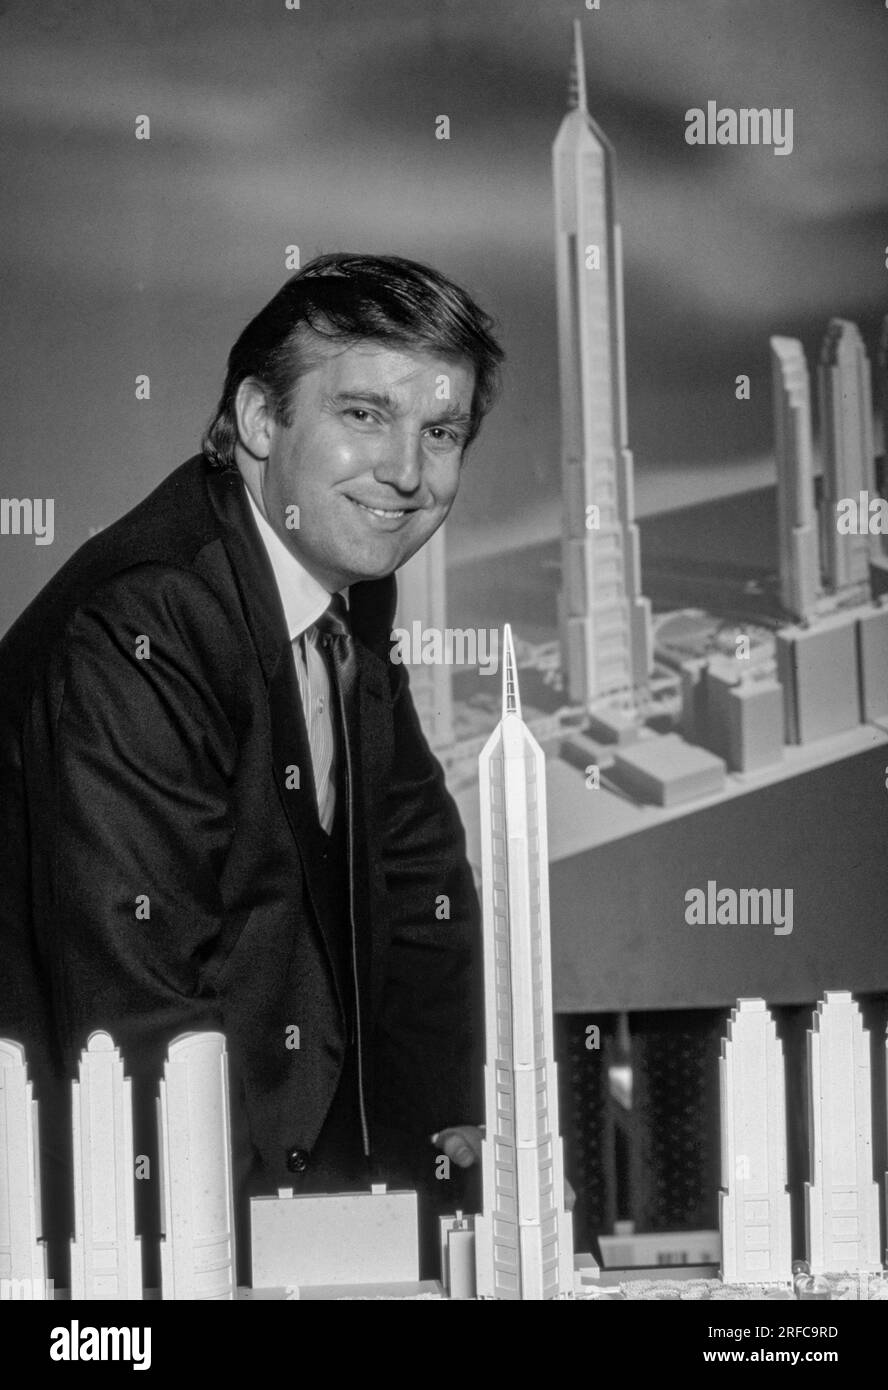 Sviluppatore Donald Trump della Trump Organization, con modelli architettonici di edifici dello skyline di New York. Fotografia di Bernard Gotfryd Foto Stock